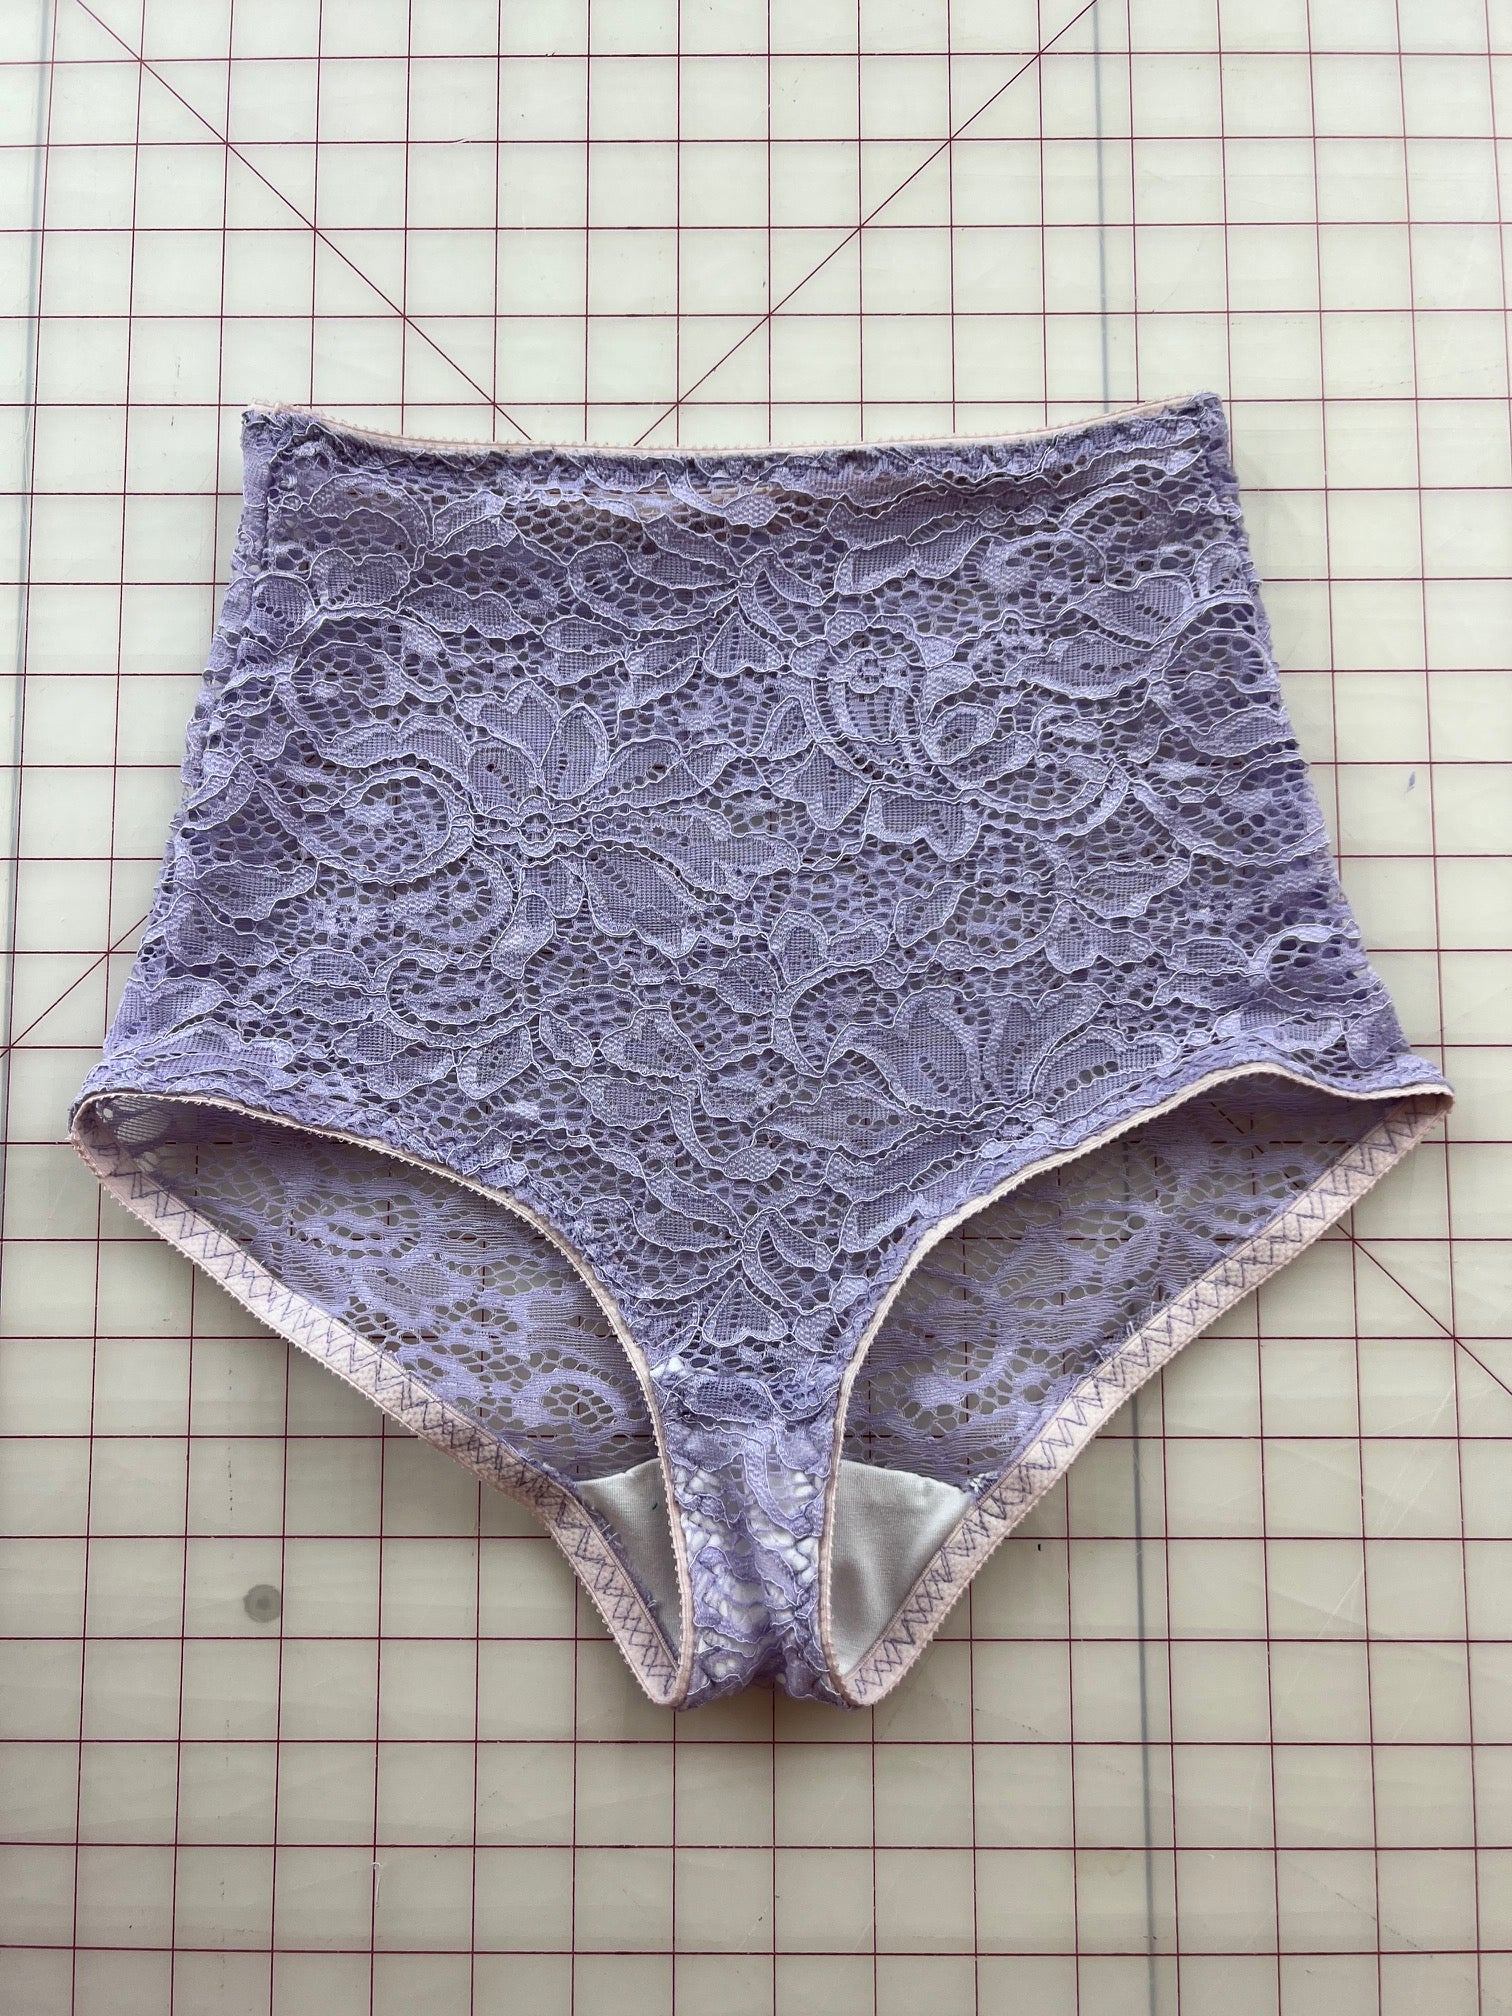 Panties Sewing Pattern